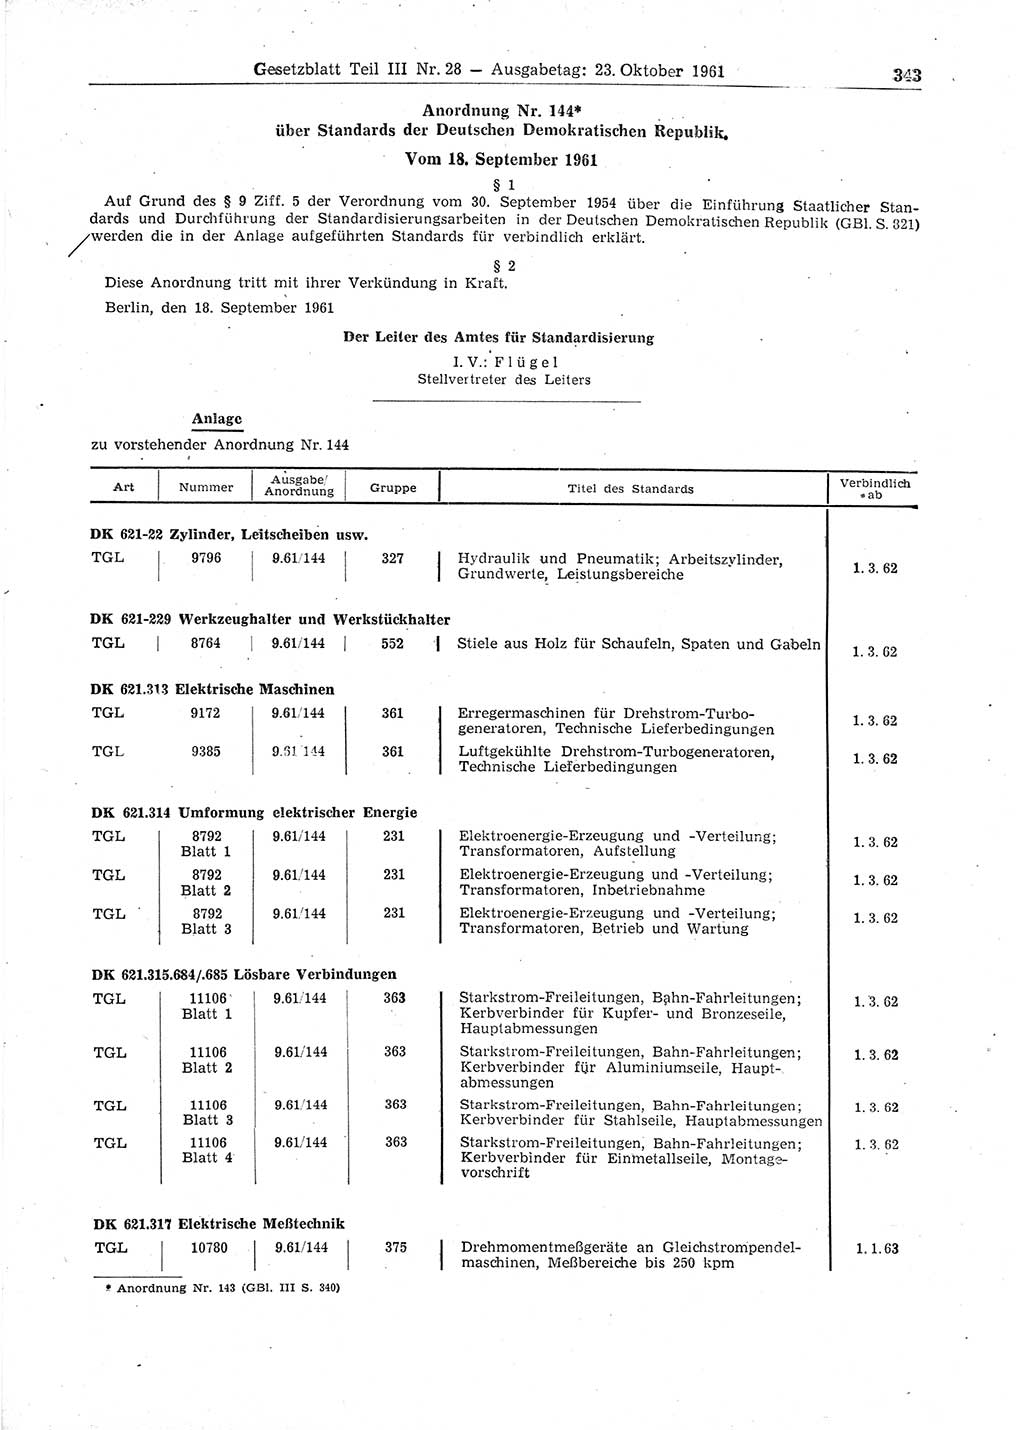 Gesetzblatt (GBl.) der Deutschen Demokratischen Republik (DDR) Teil ⅠⅠⅠ 1961, Seite 343 (GBl. DDR ⅠⅠⅠ 1961, S. 343)